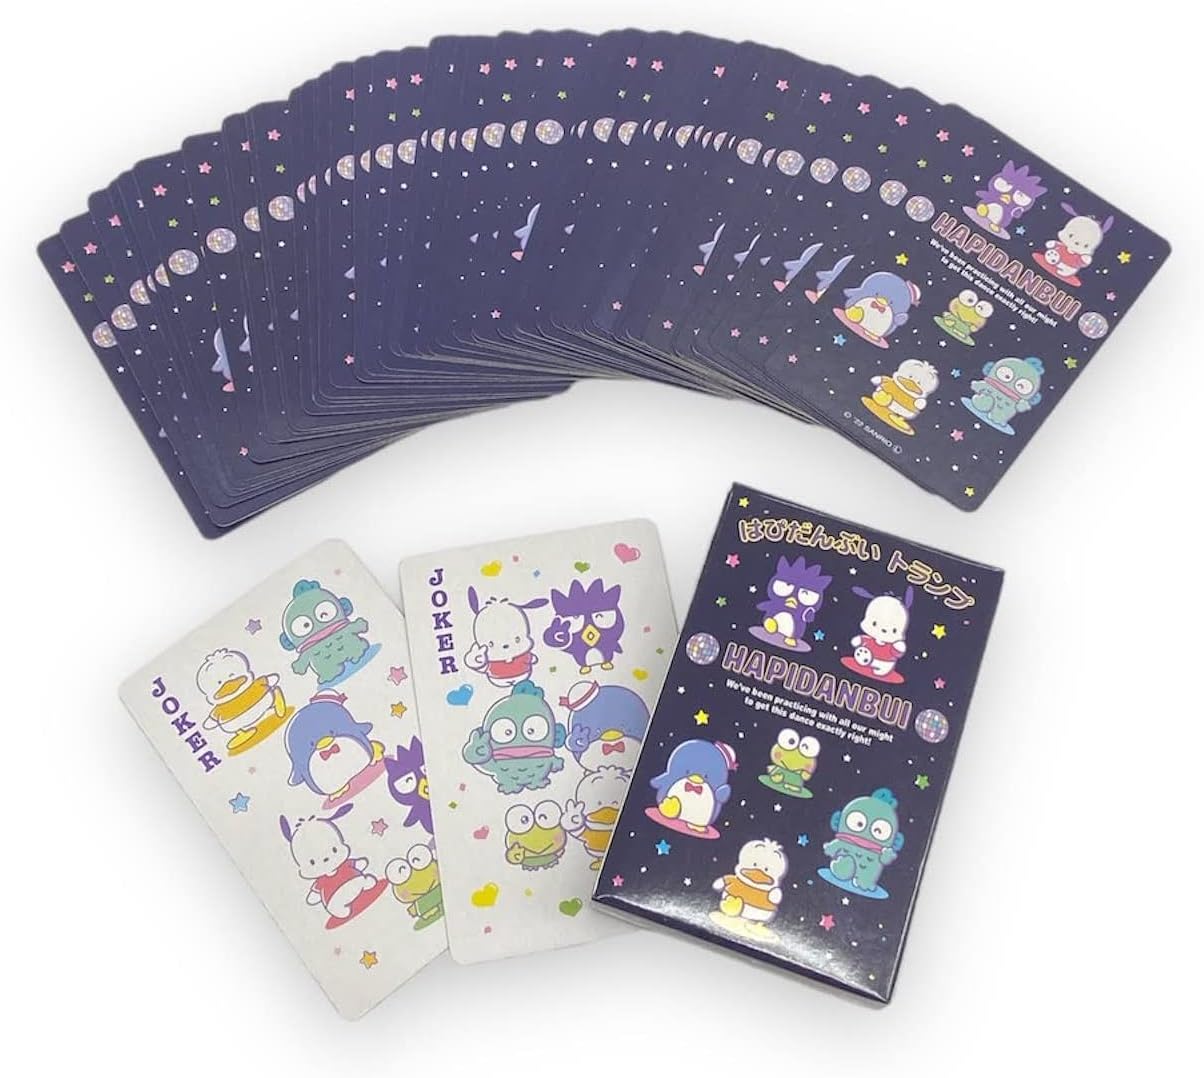 Set de cartas personajes de Sanrio, Hapidanbui, Pochacco, Hangyodon